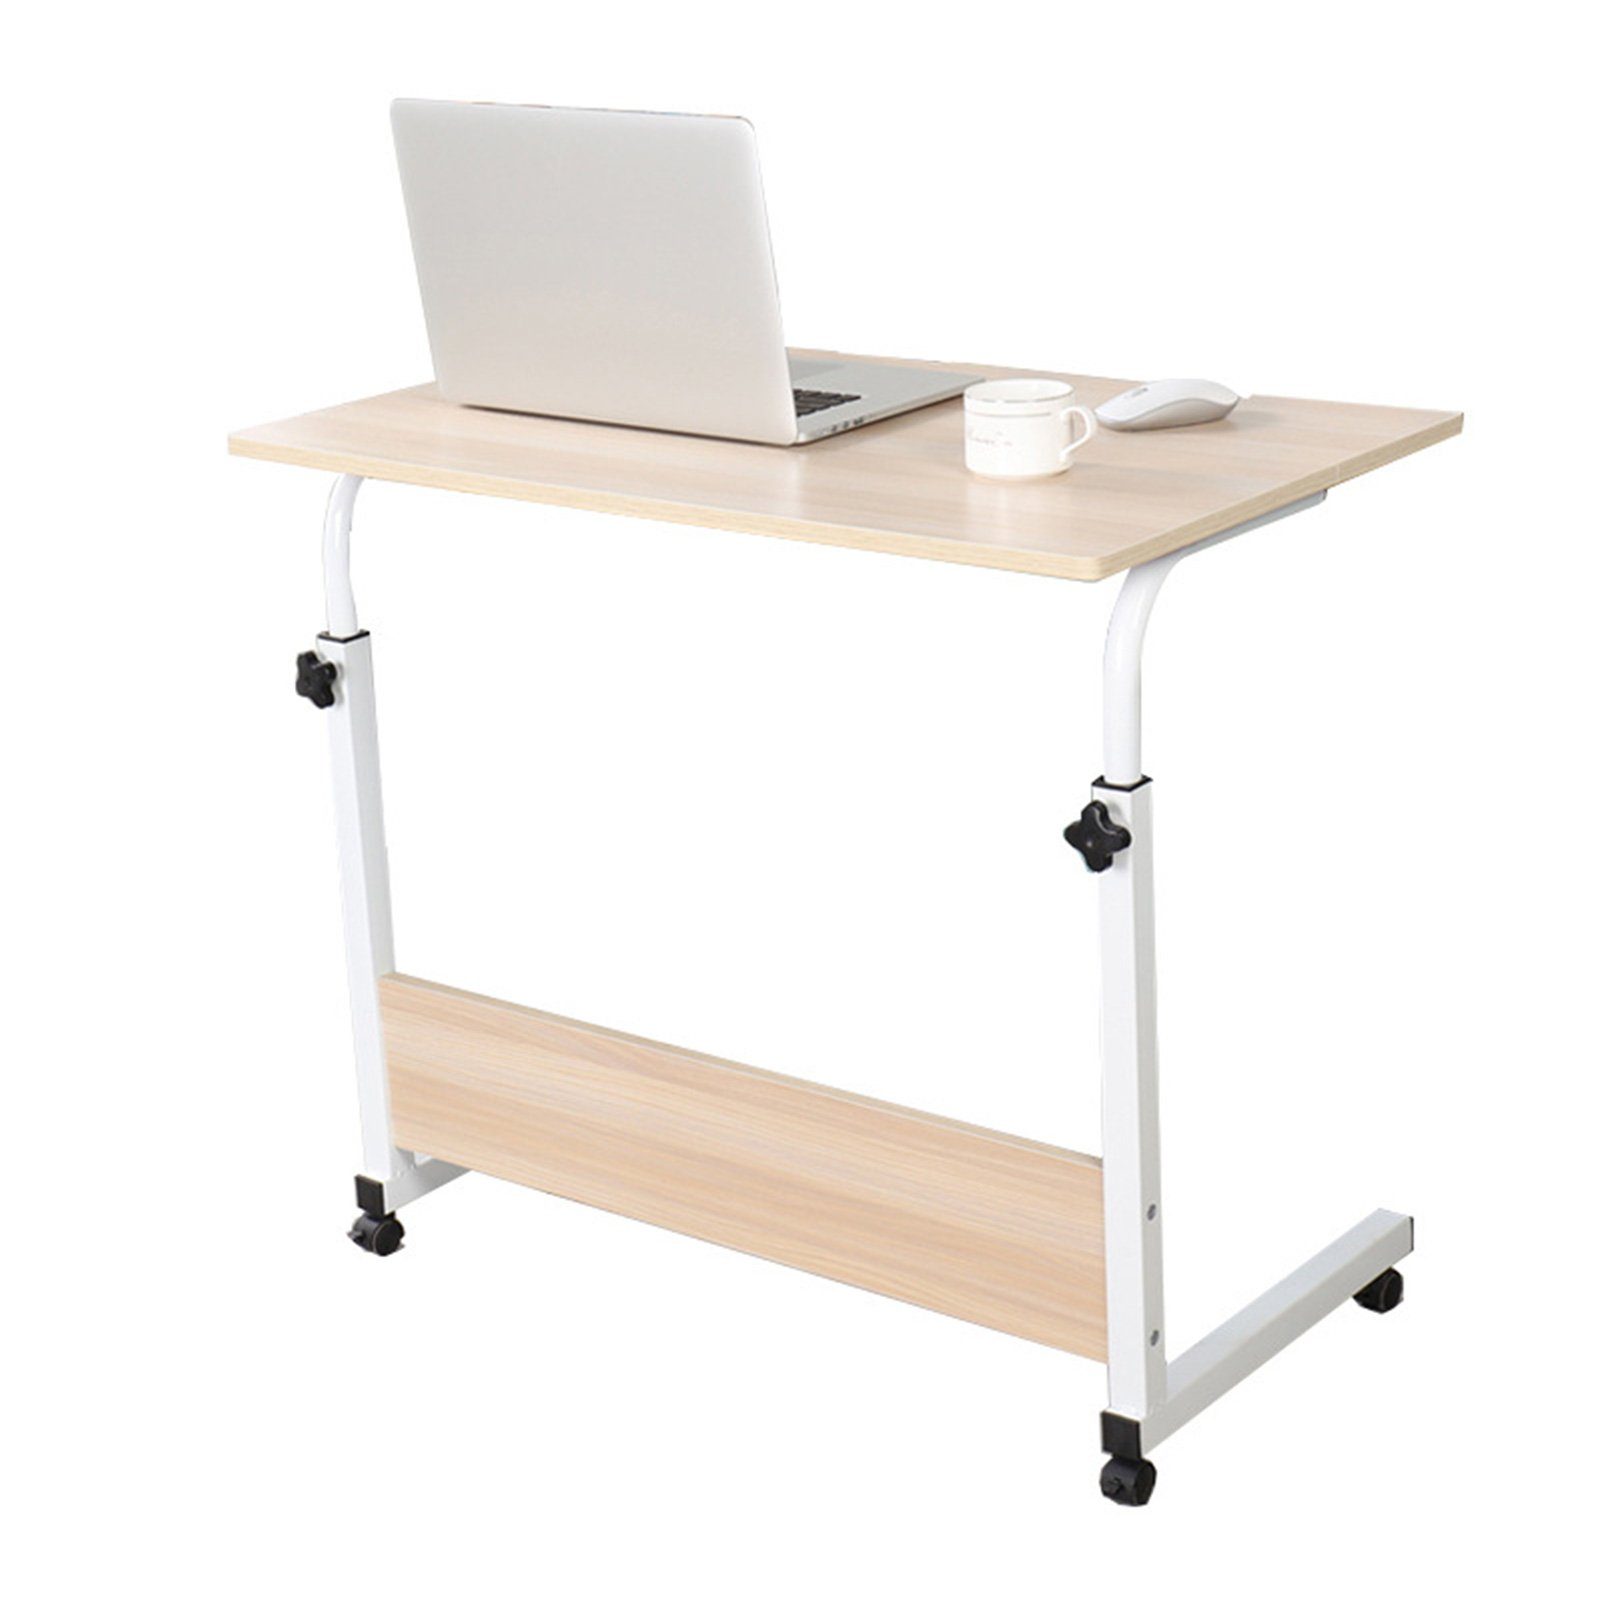 TWSOUL Laptoptisch Laptoptisch höhenverstellbarer Schreibtisch mit drehbarer Rollen Weiß Ahorn